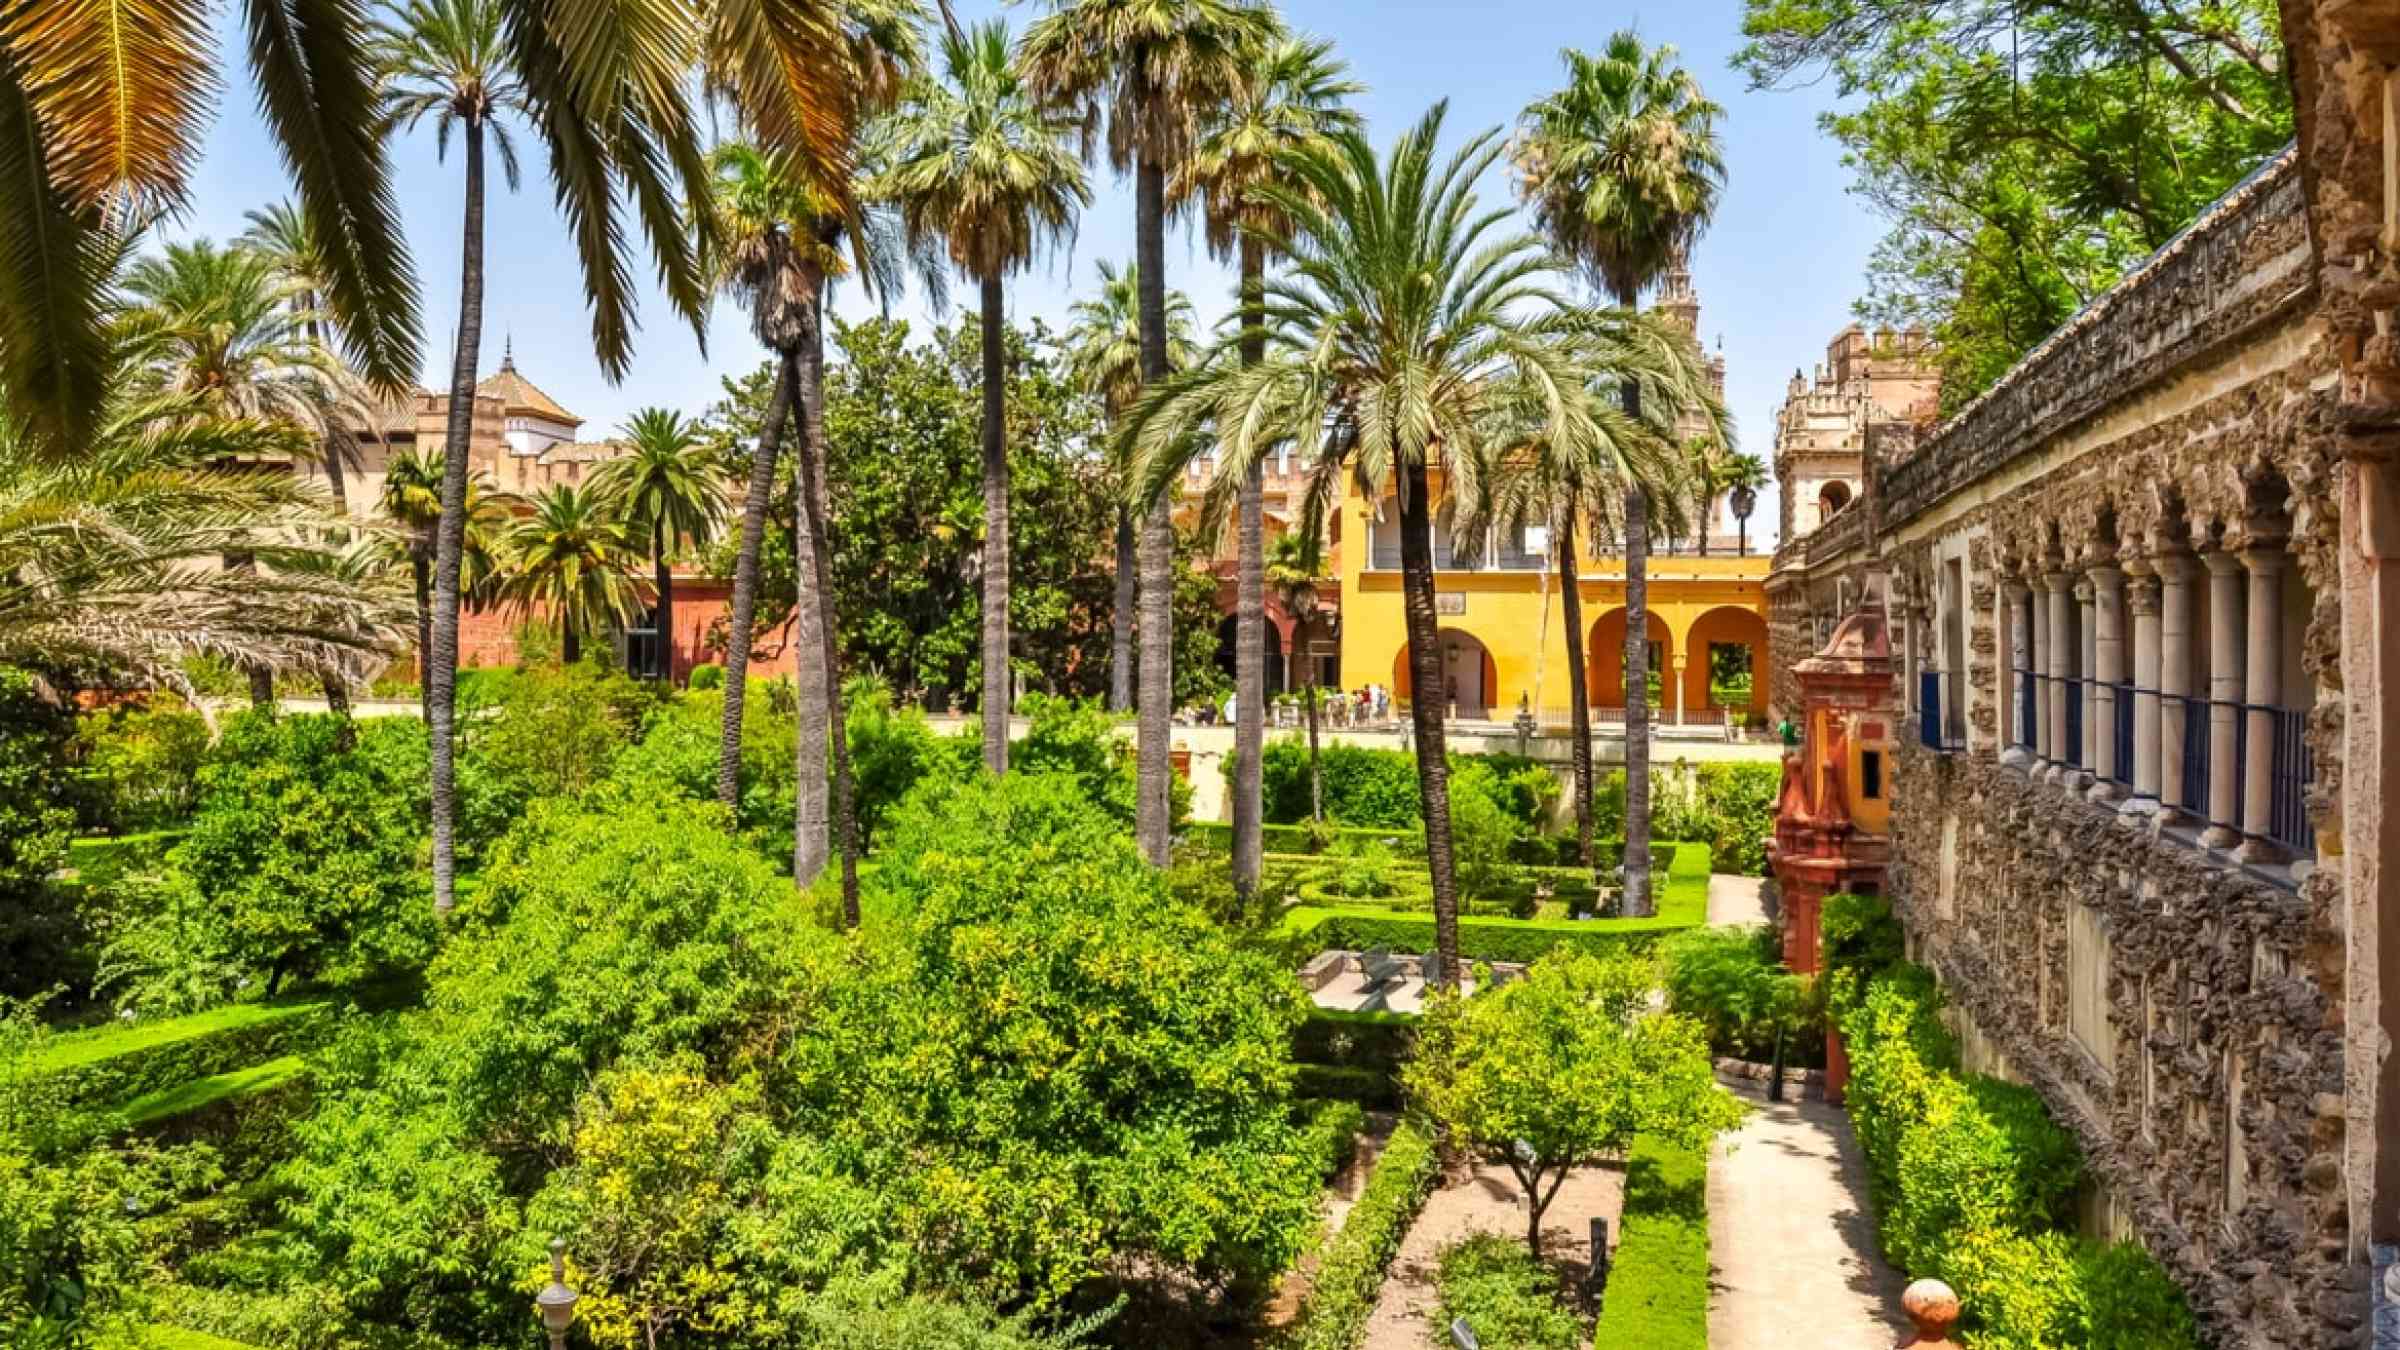 Garden in Seville, Spain